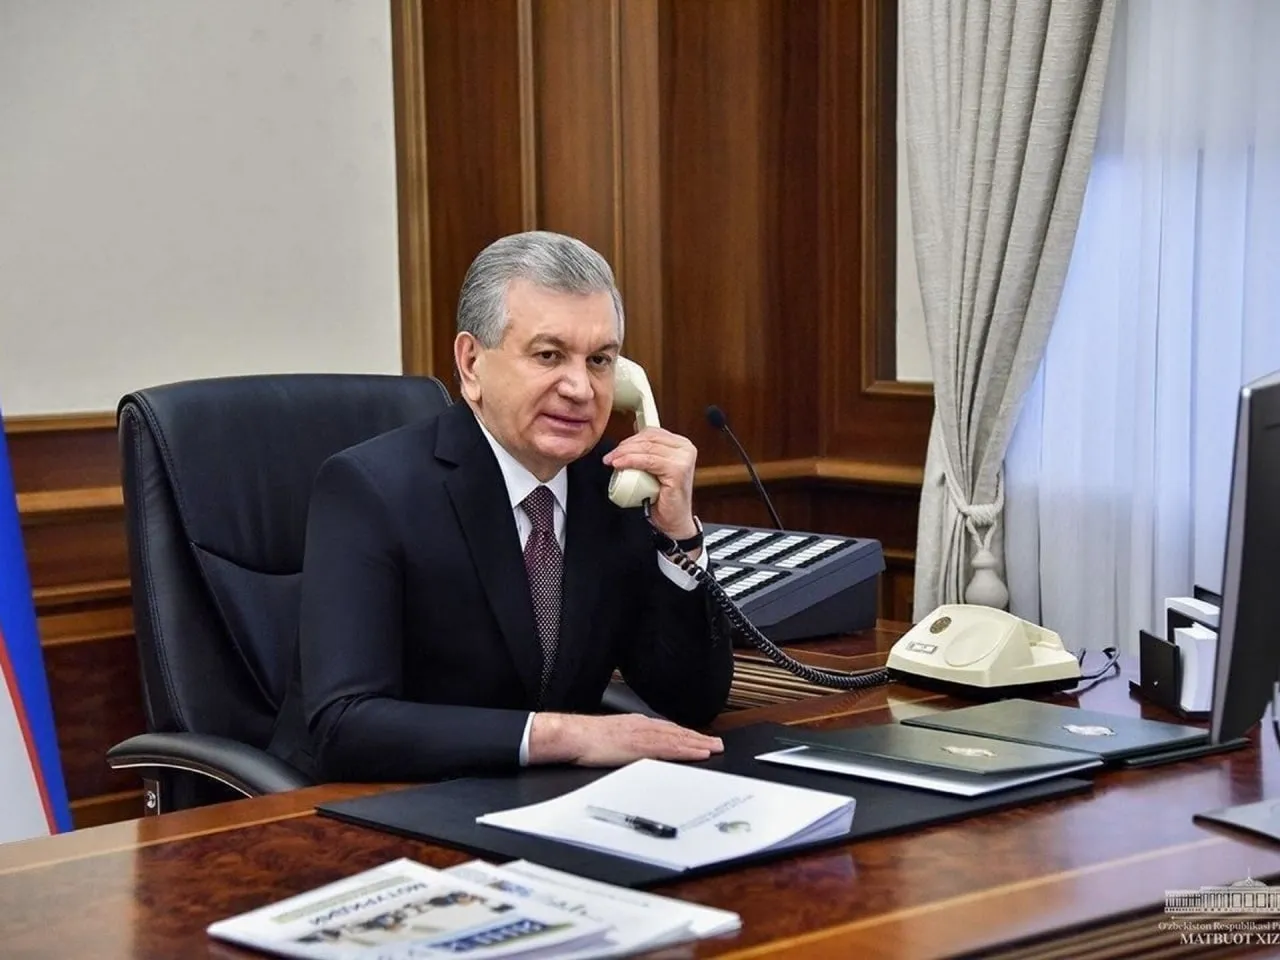 
											
											Mirziyoyev Putin bilan telefon orqali muloqot qildi
											
											